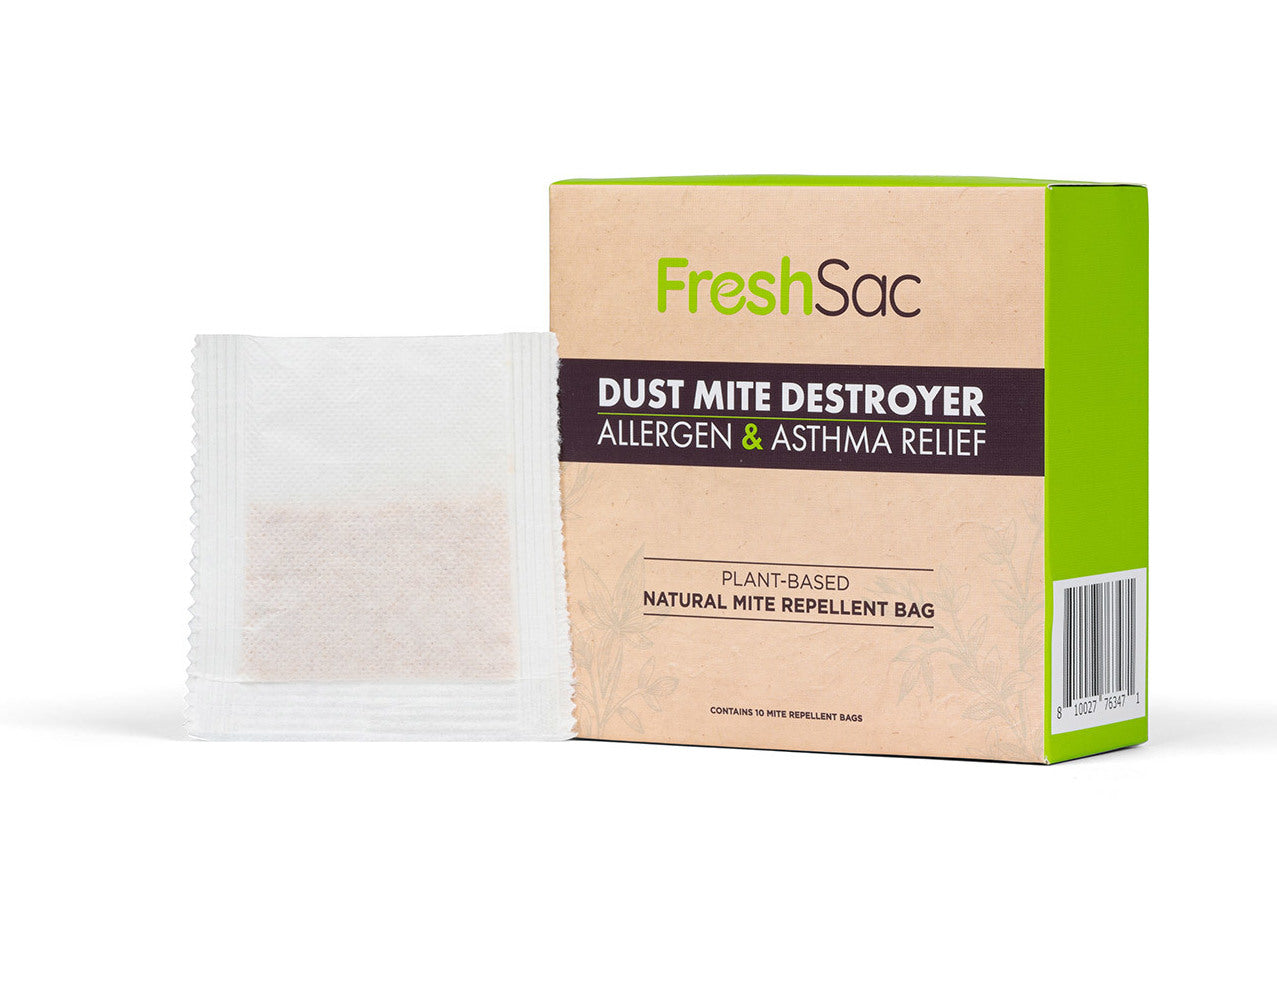 FreshSac Dust Mite Destroyer